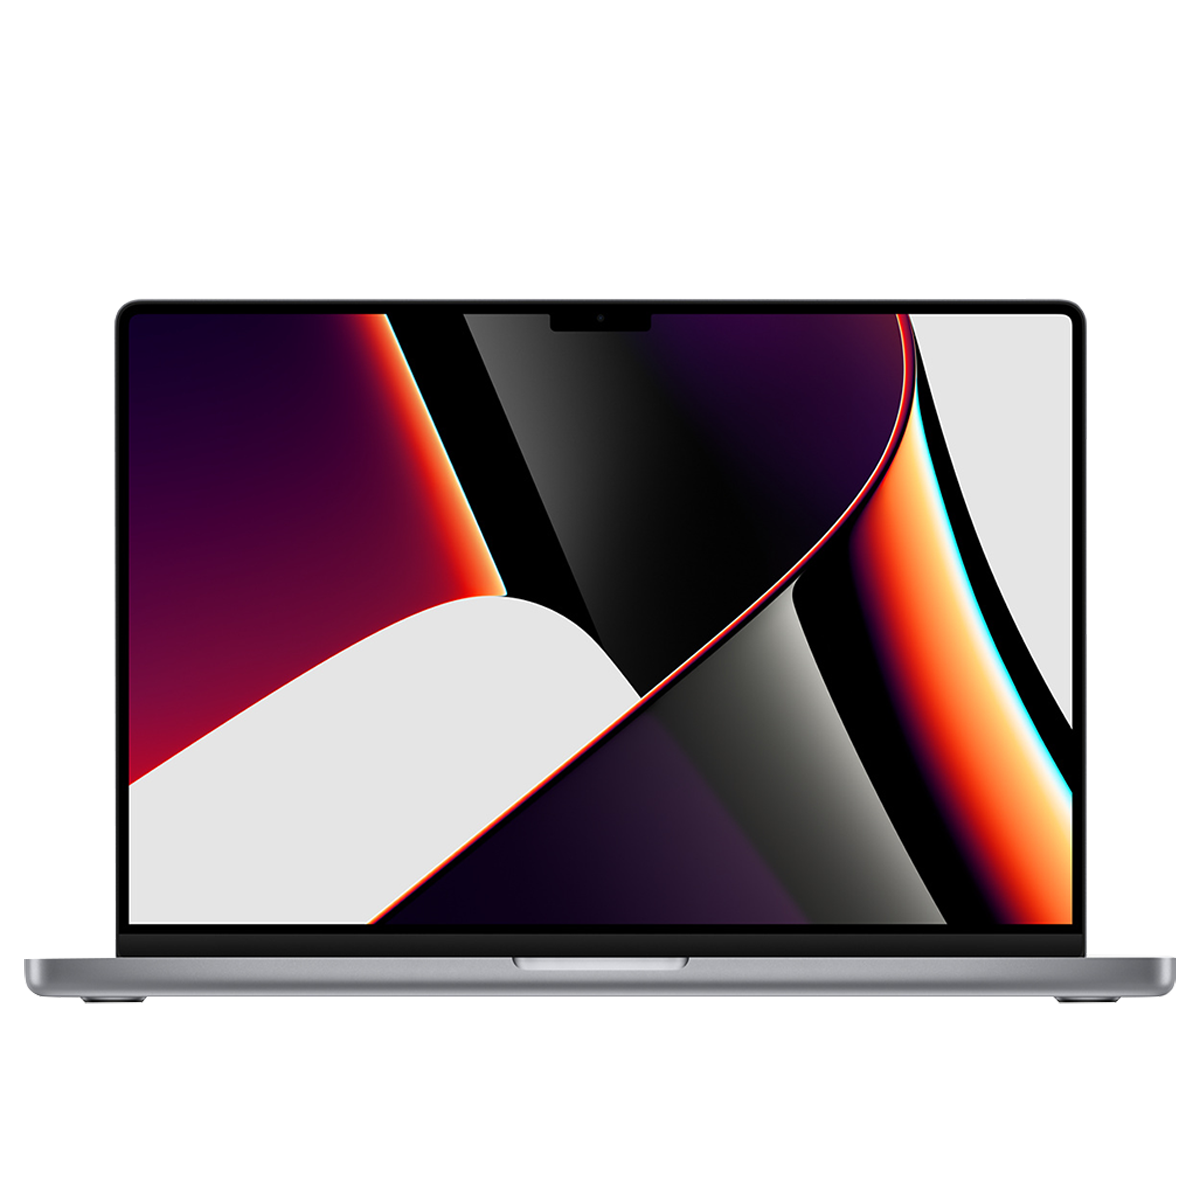  Macbook M1 Max 16-inch, 10-core CPU, 24-core GPU, 16-core Neural Engine 